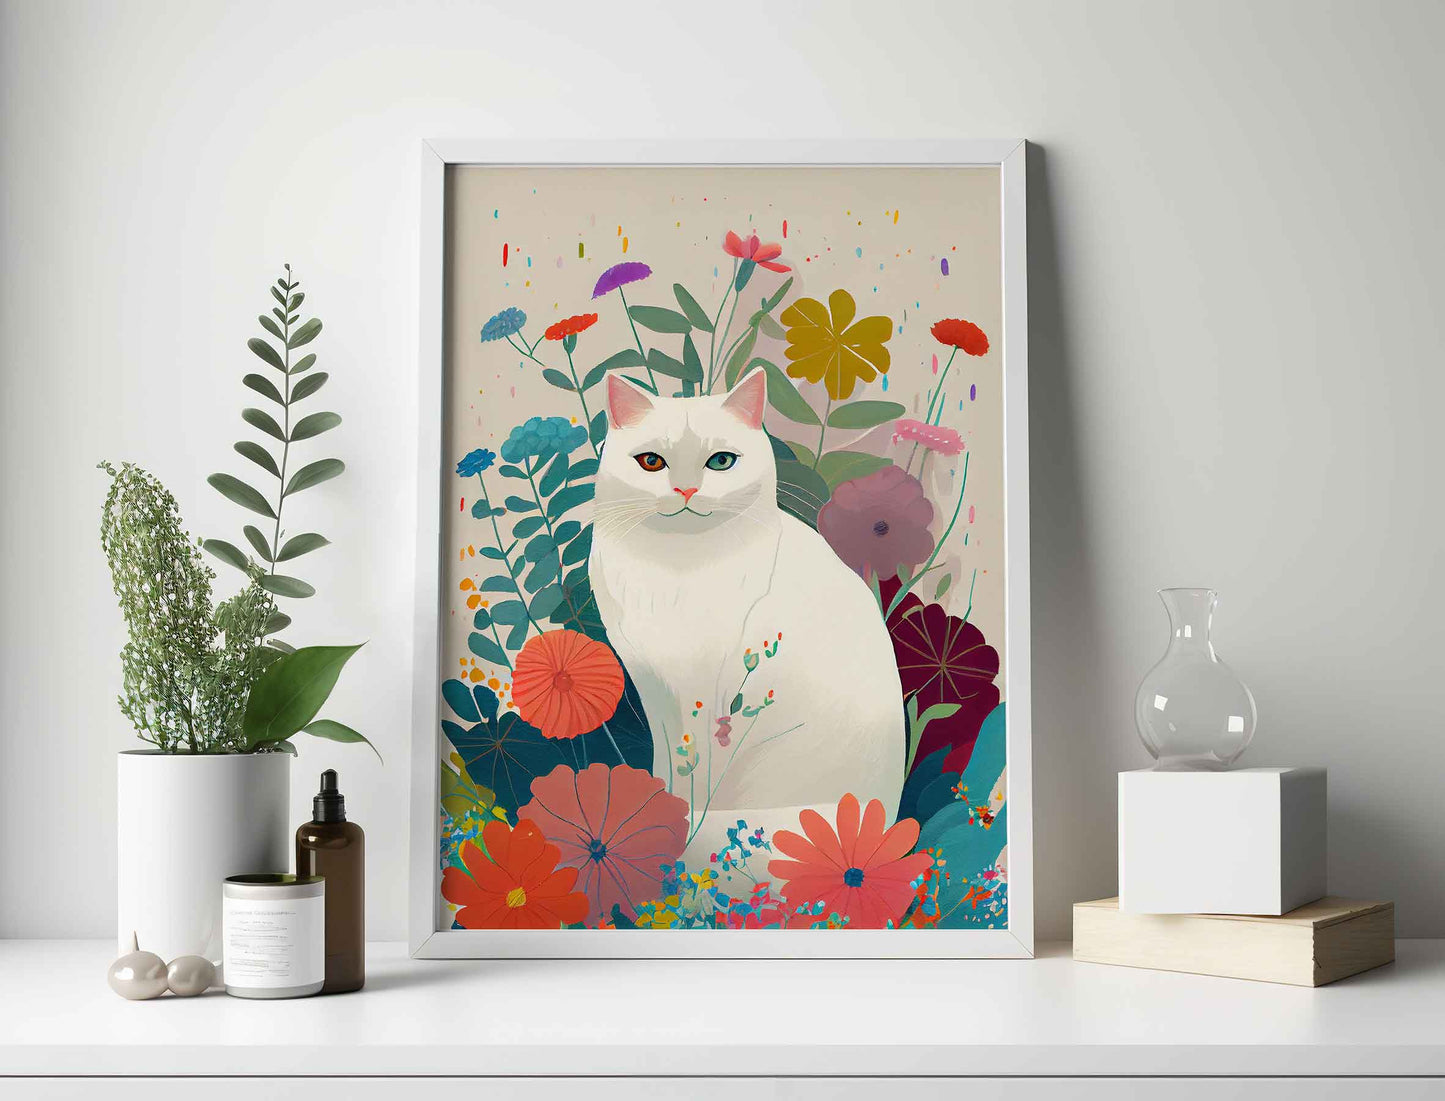 Framed Image of Cute White Cat in Flower Garden Wall Art Poster Print